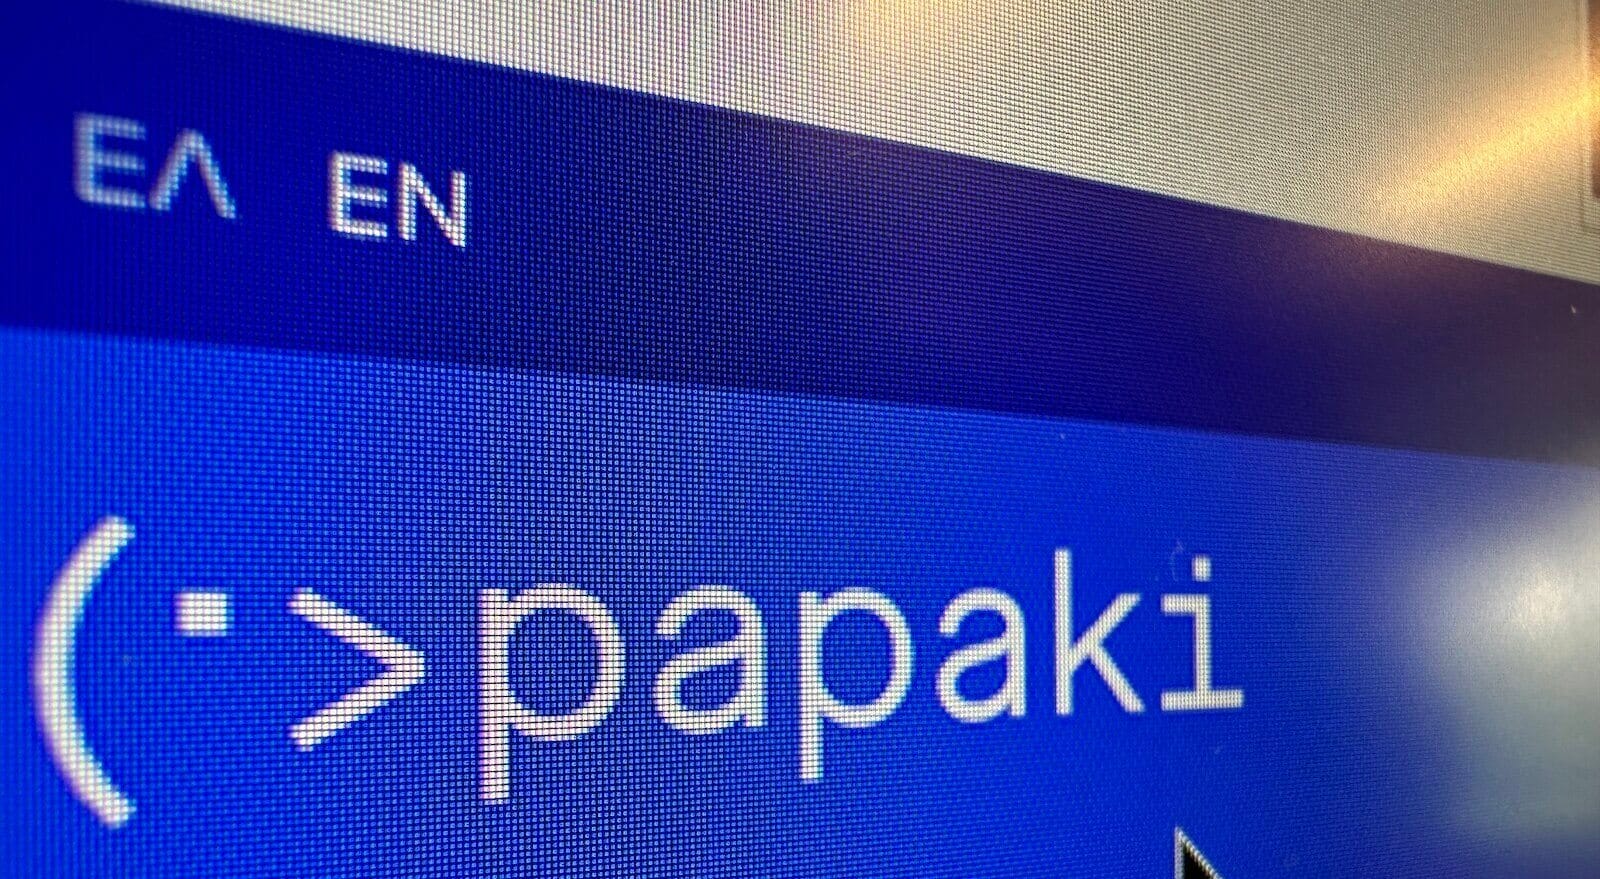 Θύμα επίθεσης το papaki.gr, δημοφιλής υπηρεσία καταχώρησης domains στη χώρα μας